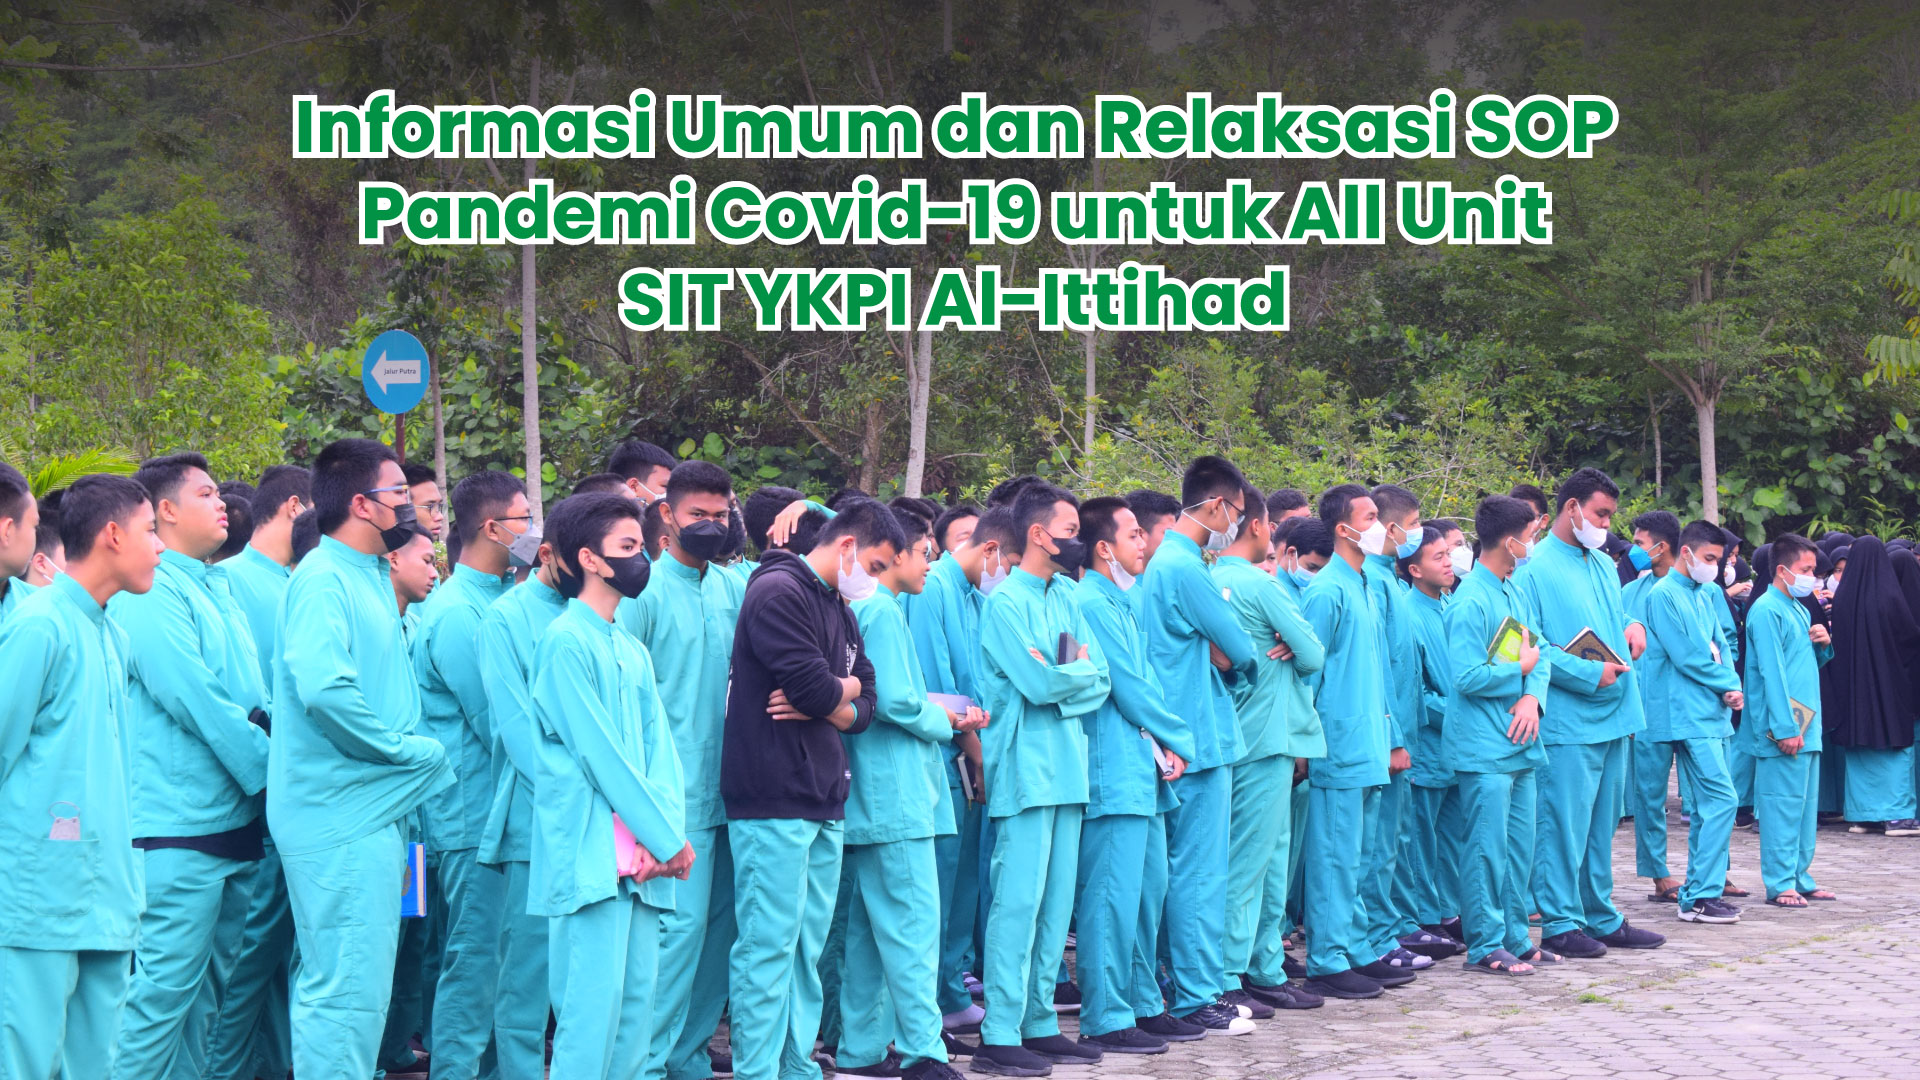 Informasi Umum dan Relaksasi SOP Pandemi Covid-19 untuk All Unit SIT YKPI Al-Ittihad